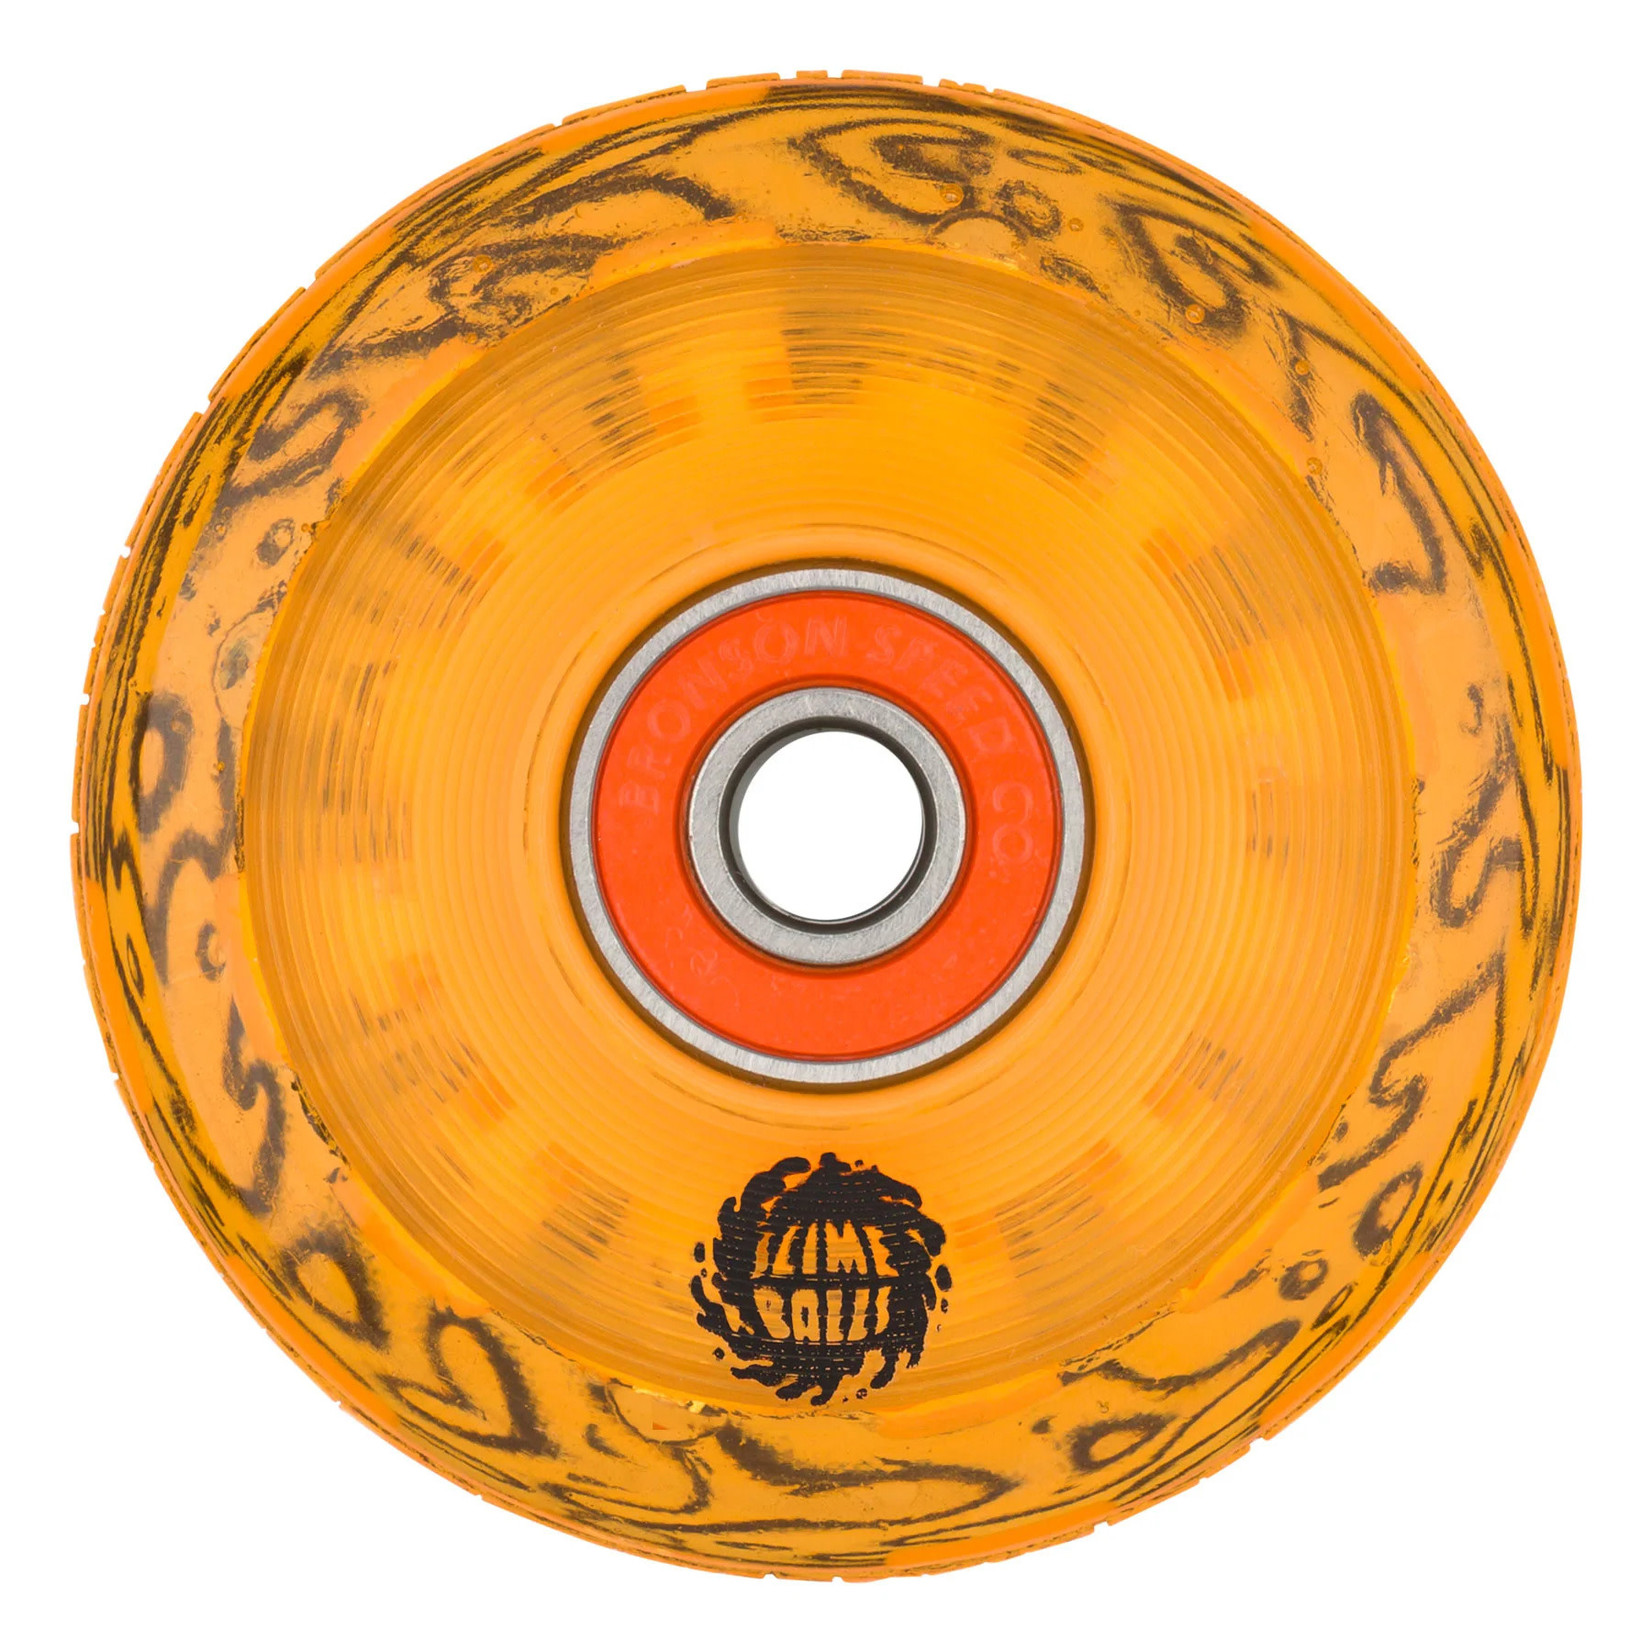 Slime Balls 60mm Light Ups OG Slime Orange 78a Skateboard Wheels Slime Balls